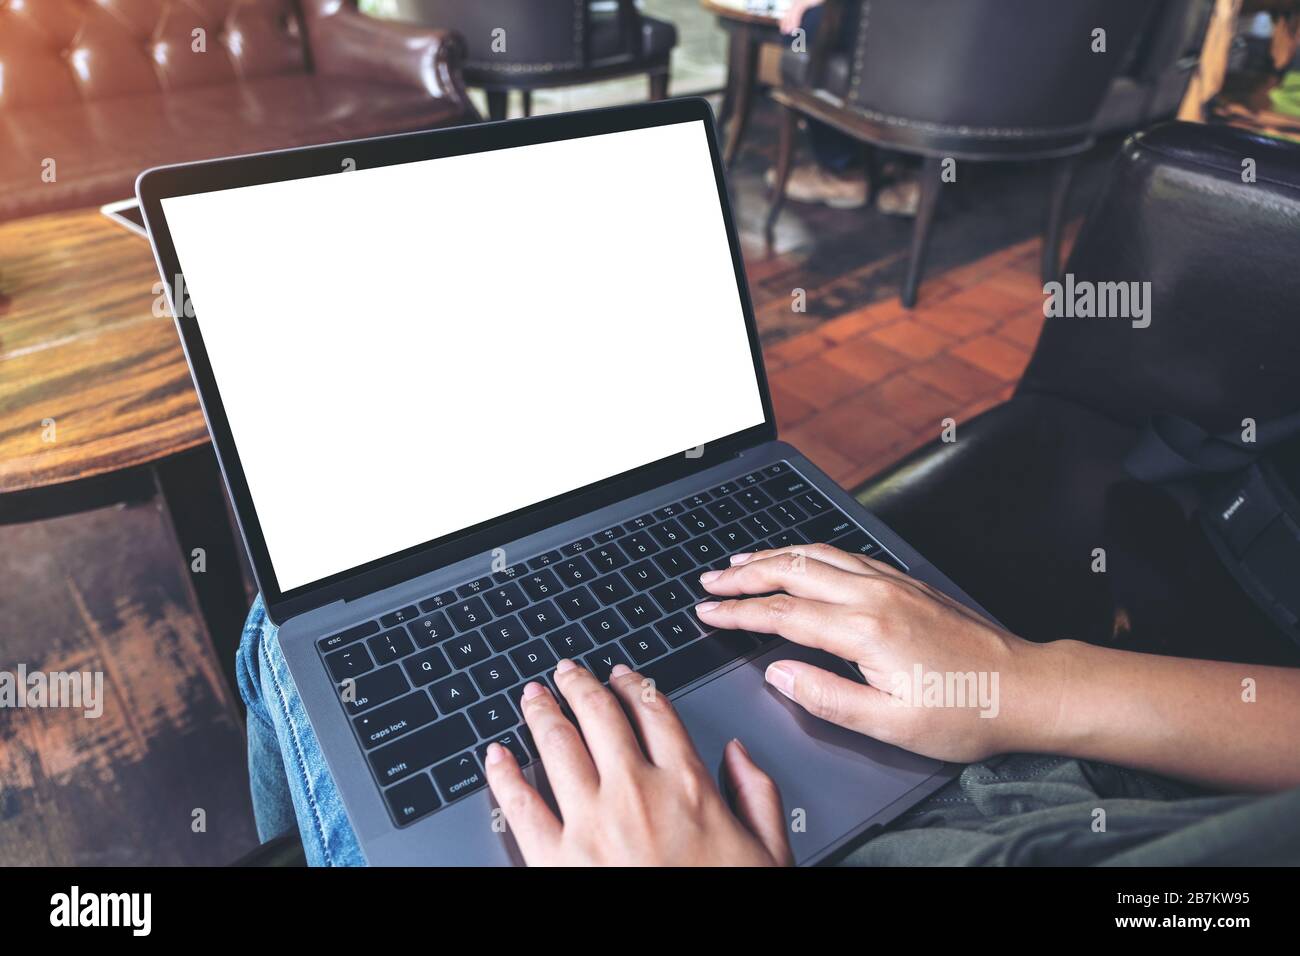 Mockup-Bild einer Frau, die im Café sitzt und auf dem Laptop mit leerem weißem Desktop-Bildschirm tippt Stockfoto